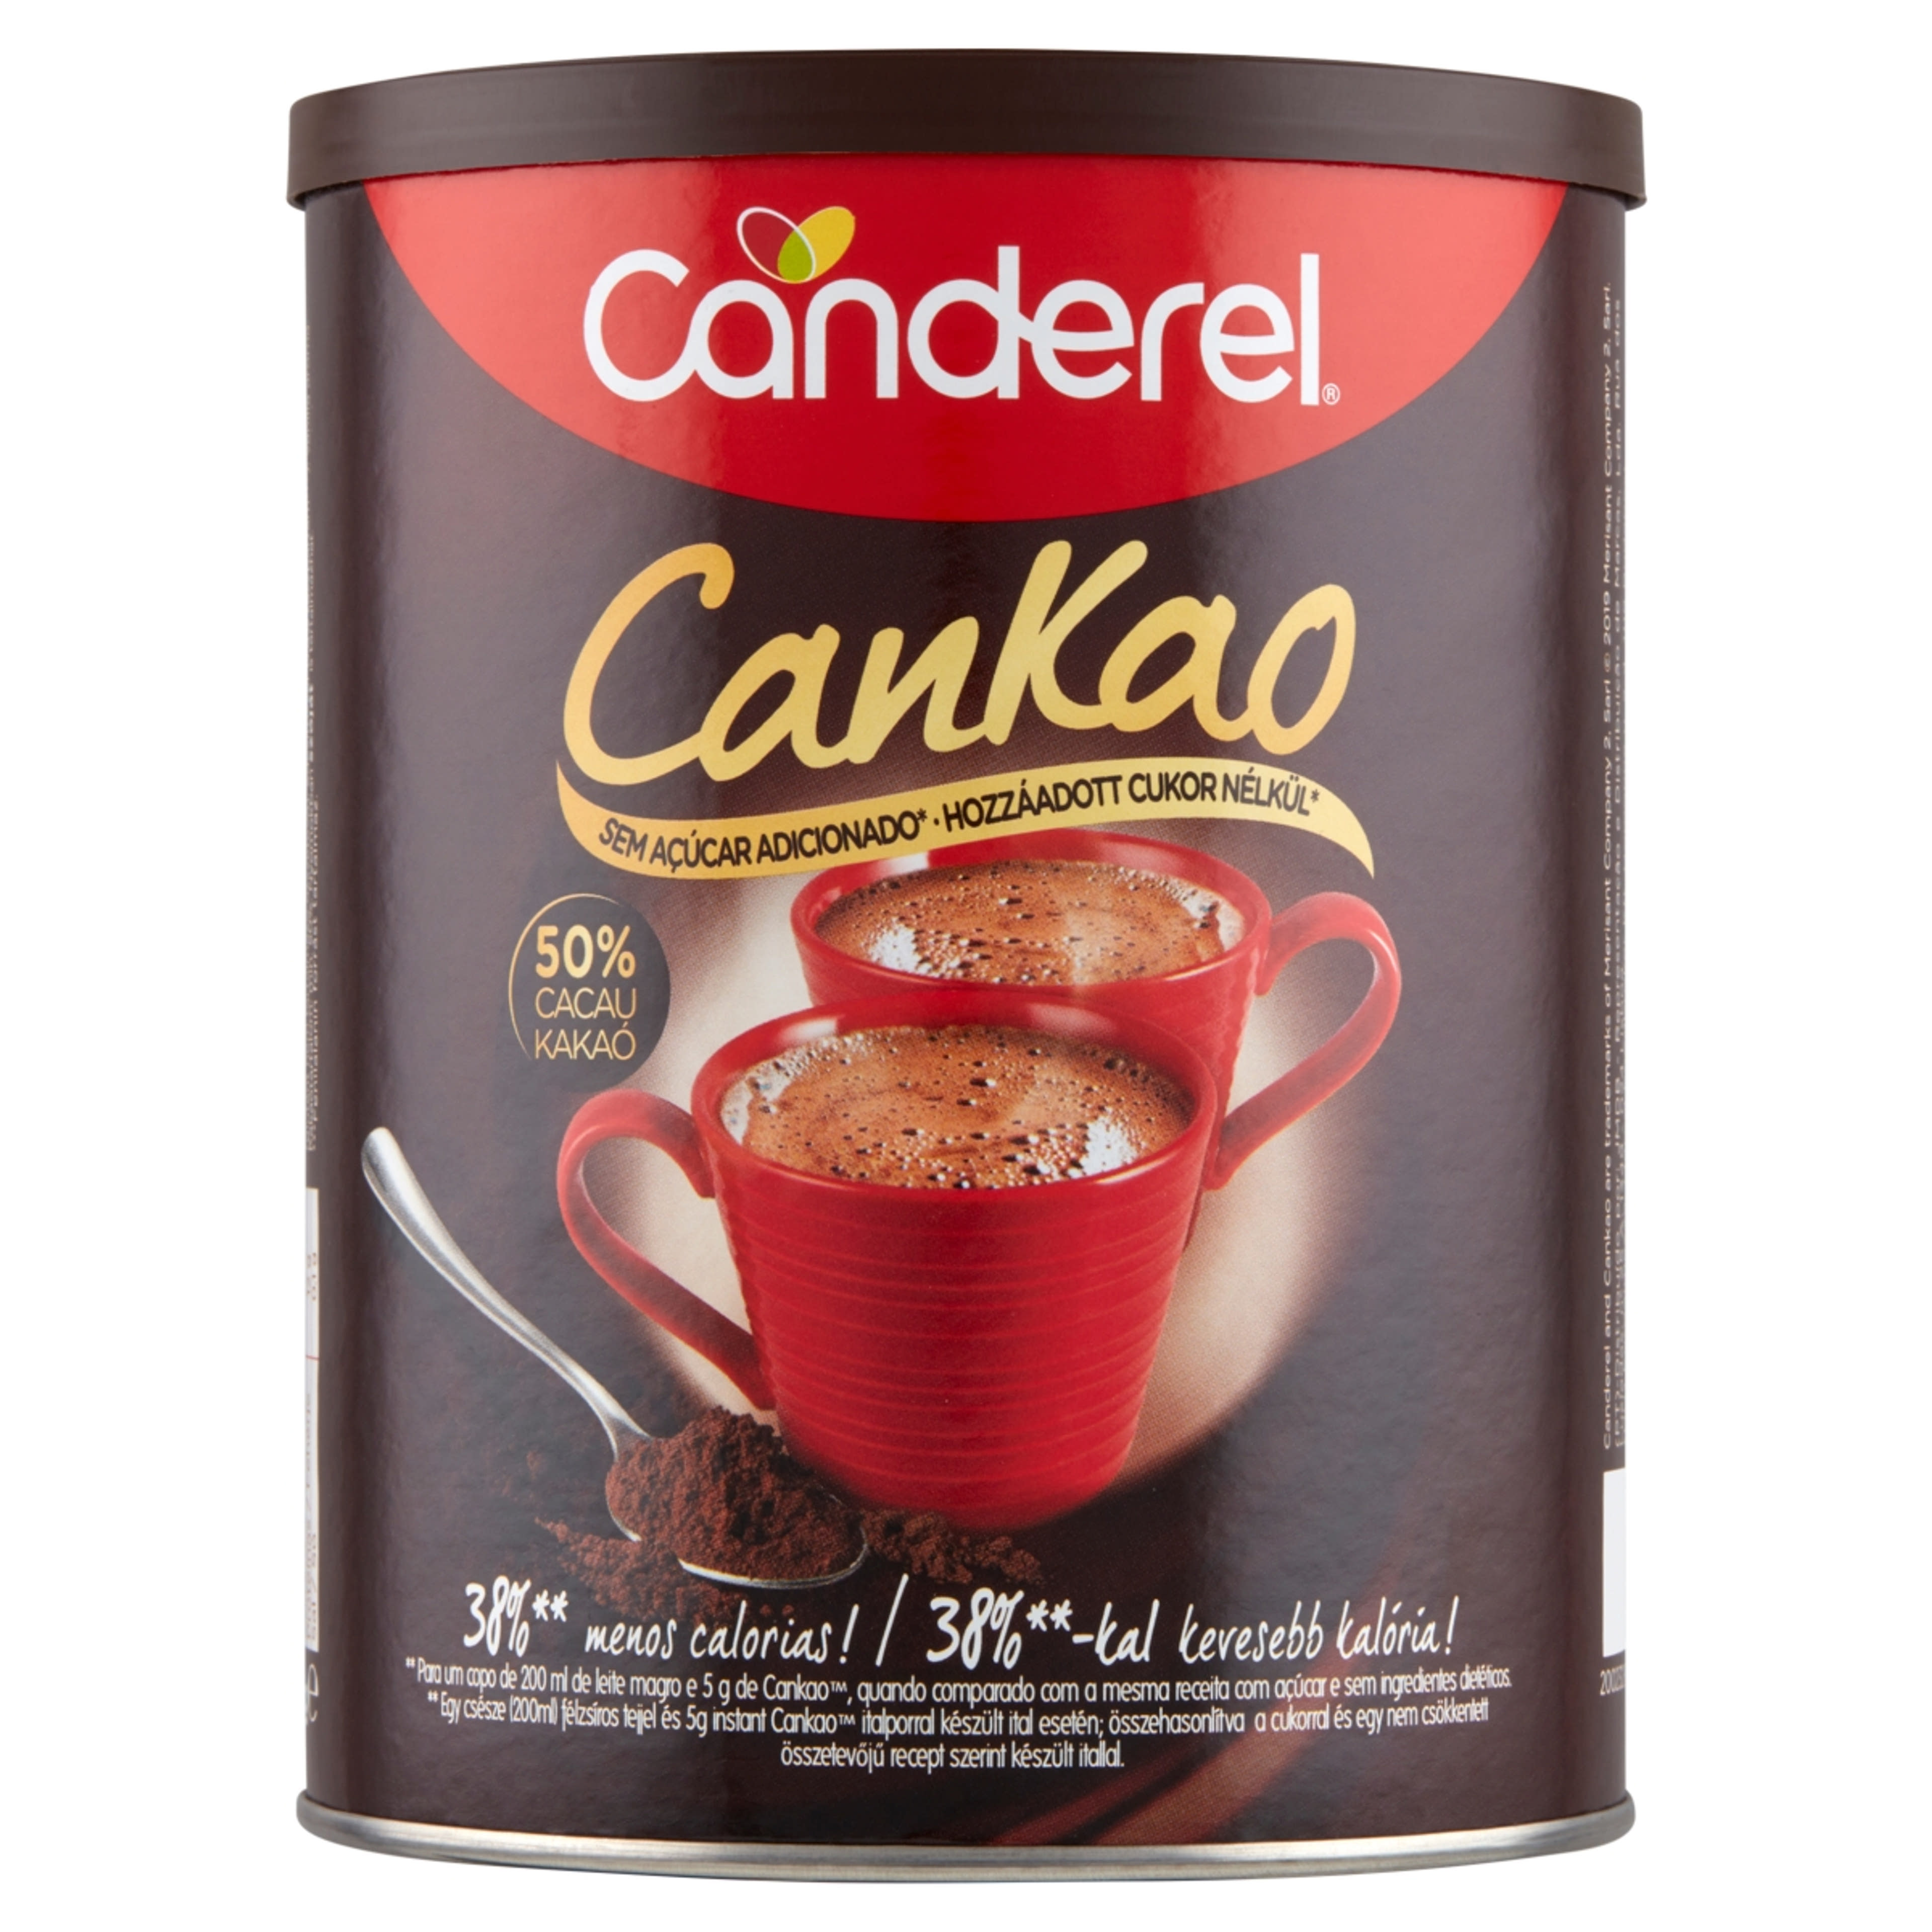 Canderel Cankao instant kakaó alapú italpor édesítőszerrel - 250 g-1